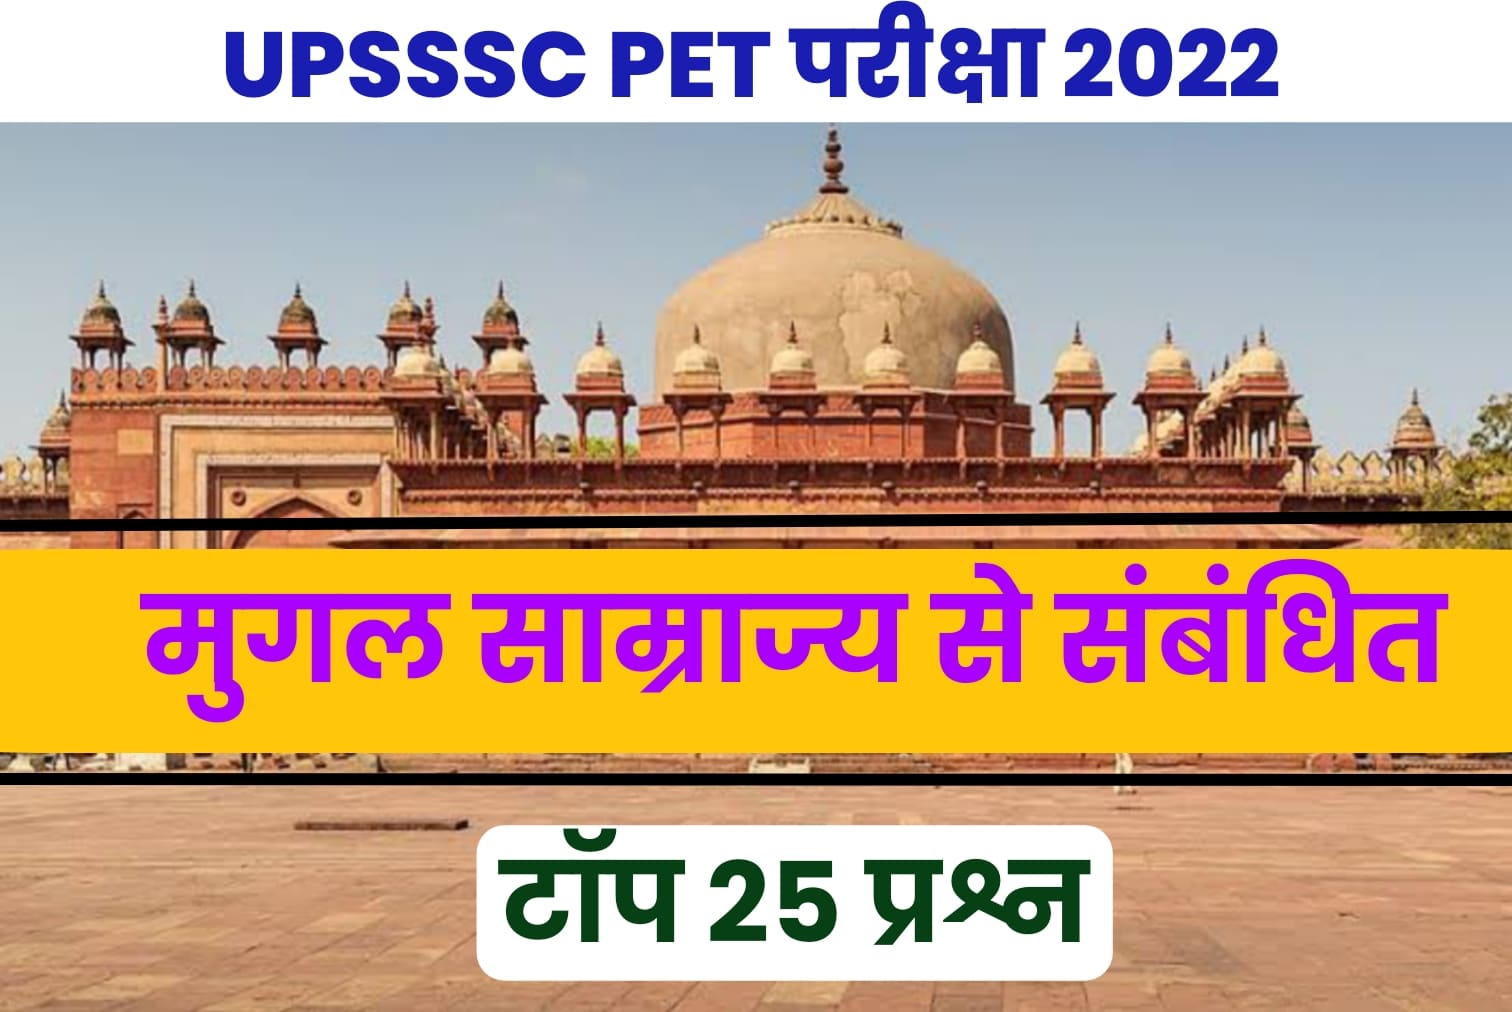 UPSSSC PET EXAM 2022 | मुगल साम्राज्य से जुड़े Top 25 प्रश्न, परीक्षा से पहले जरूर पढ़ें